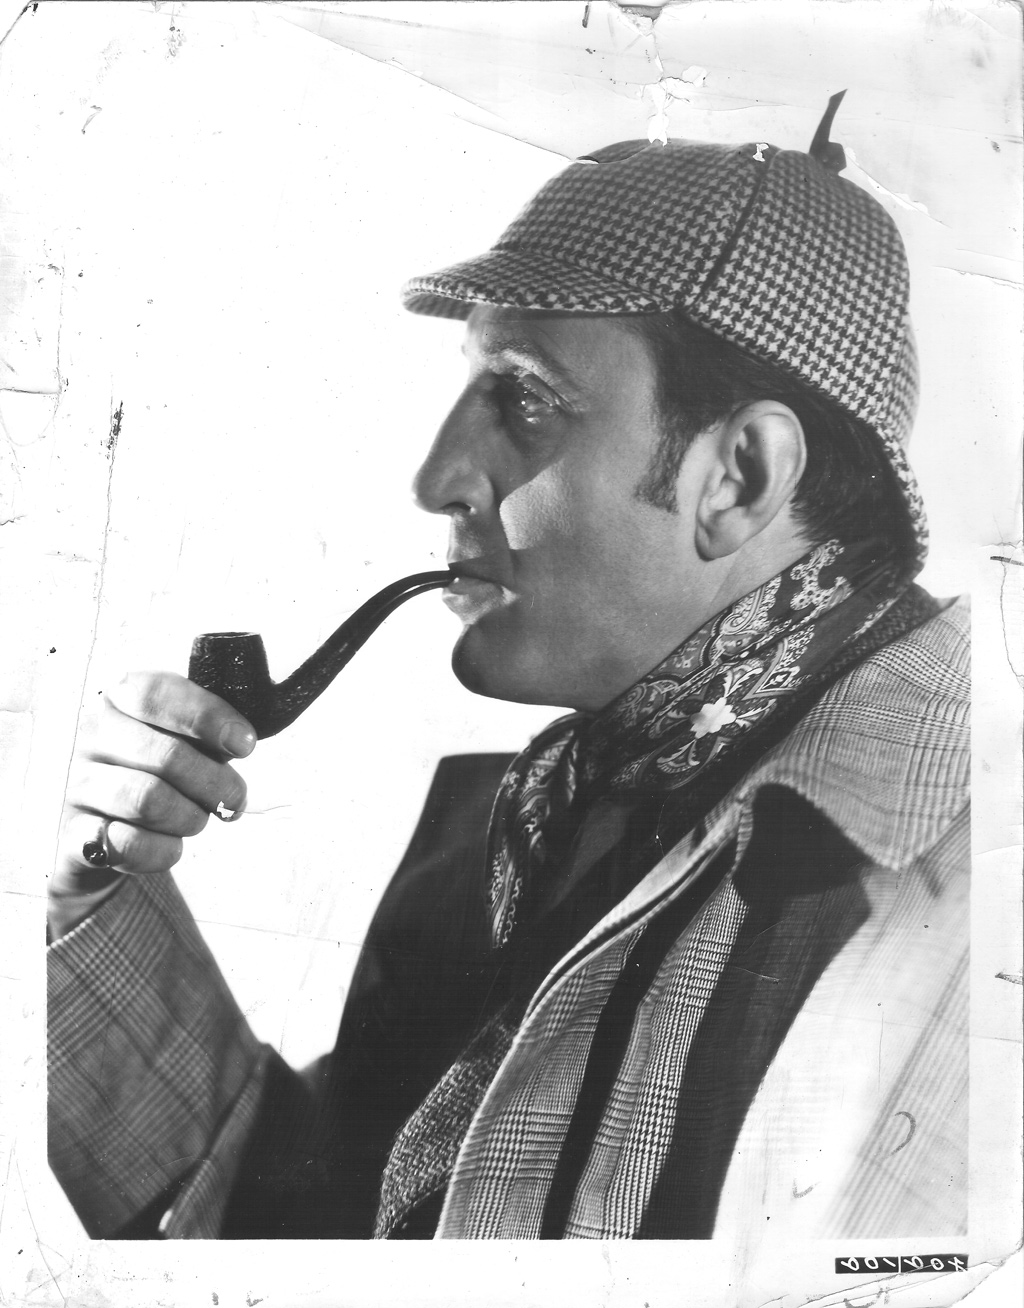 Sherlock Holmes Now in Public Domain